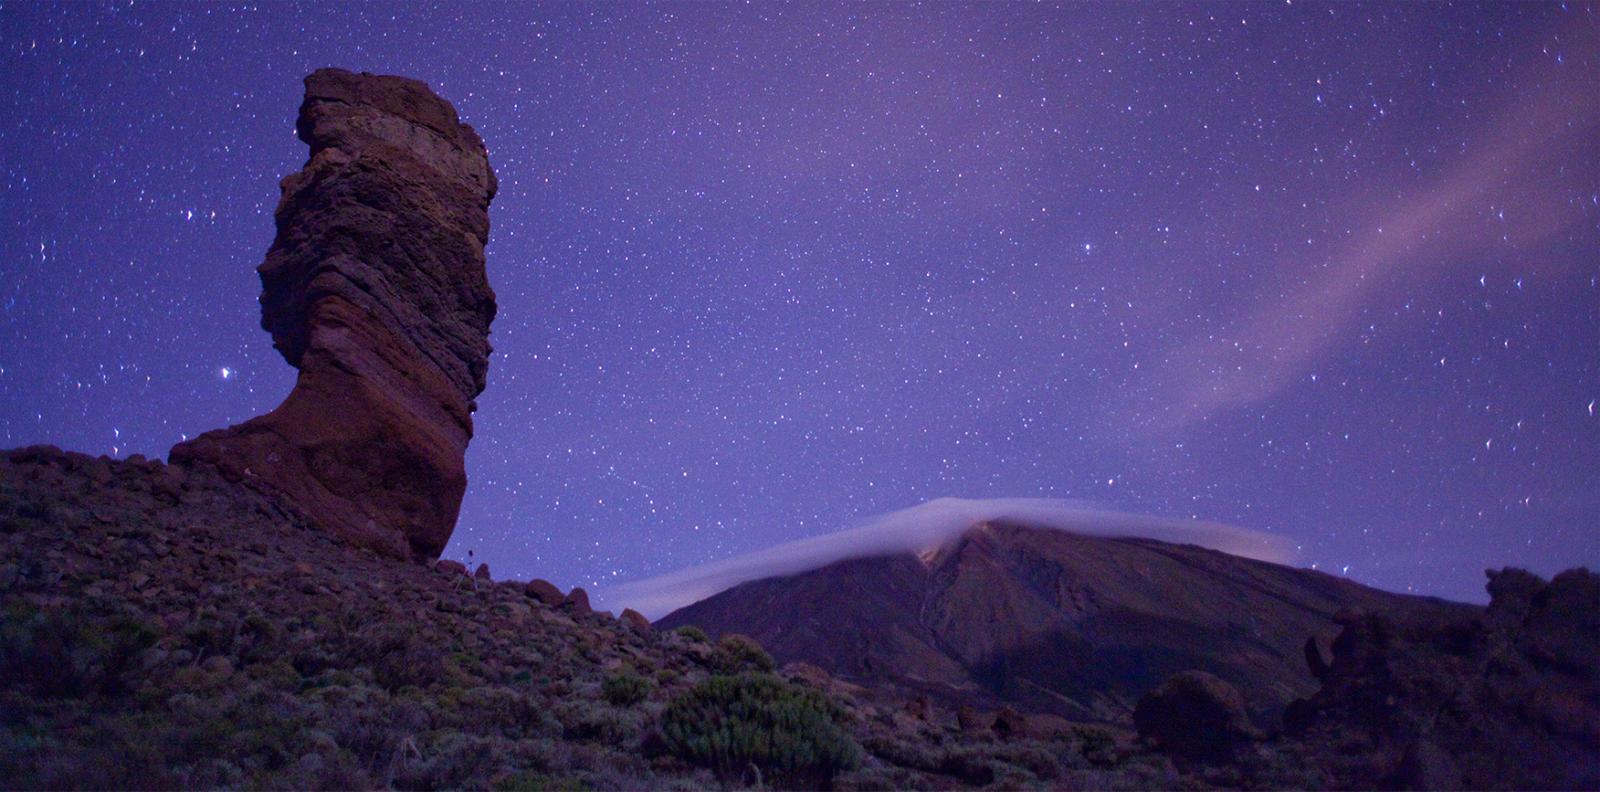 Roque Cinchado, El Teide